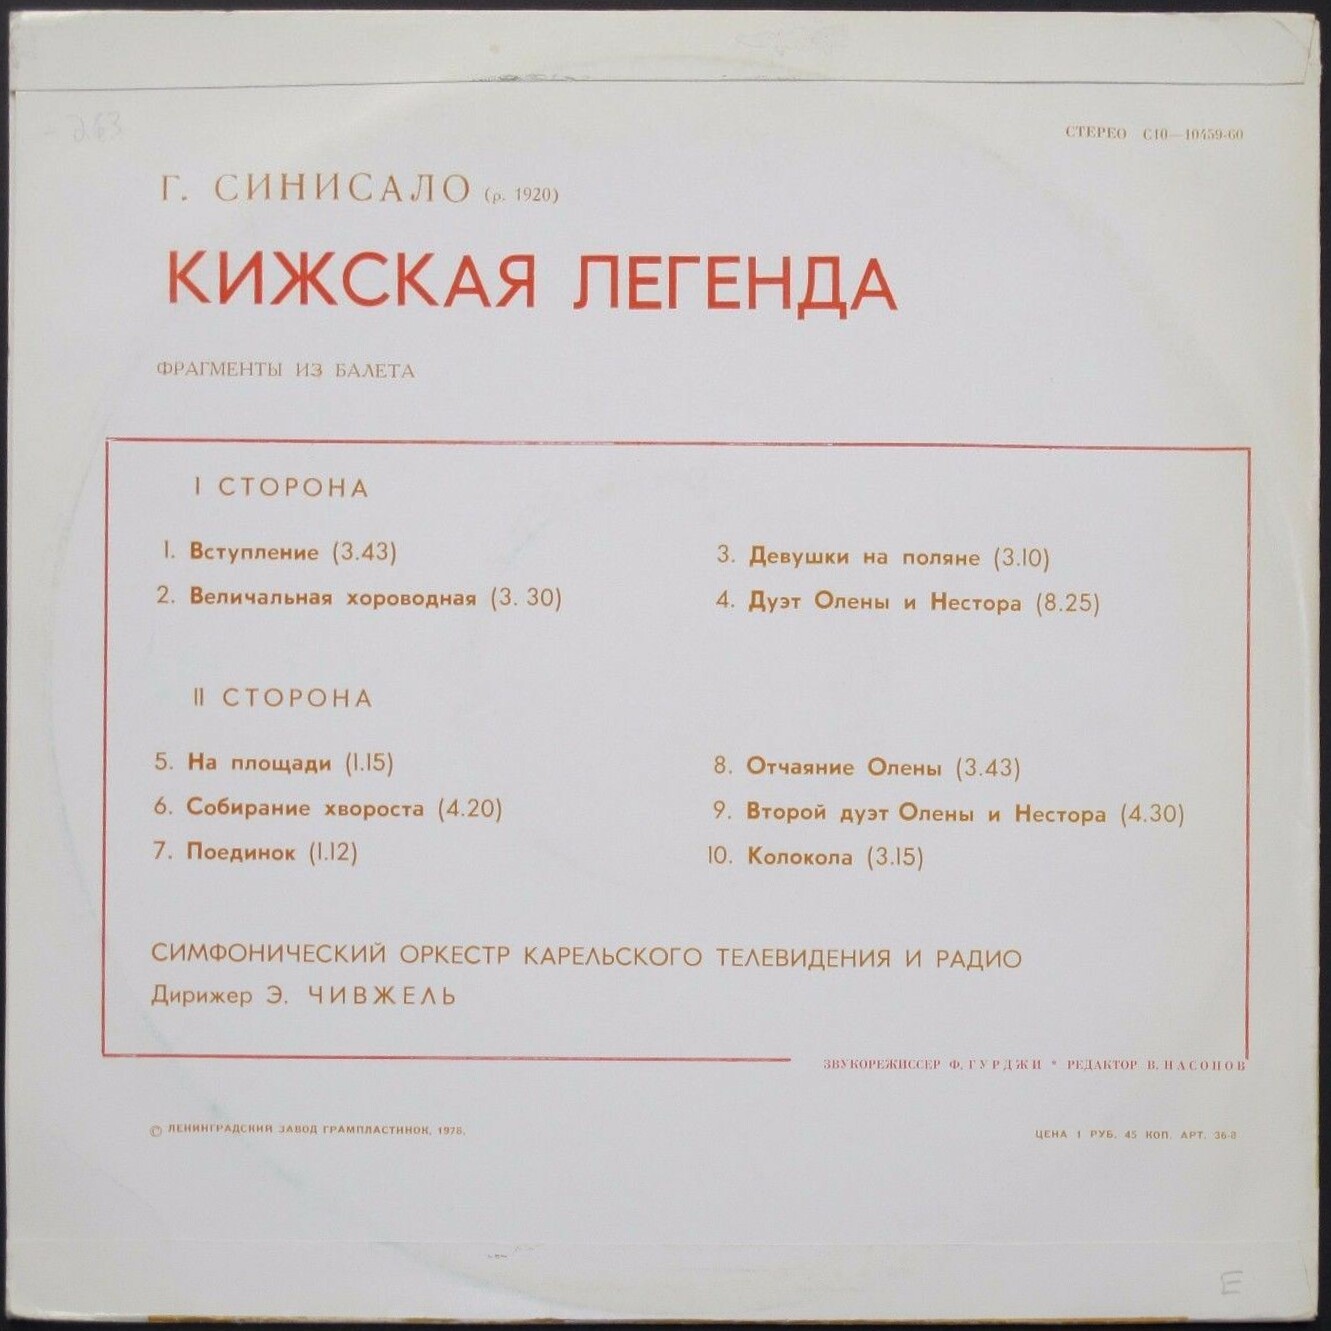 Г. СИНИСАЛО (1920). "Кижская легенда", фрагменты из балета